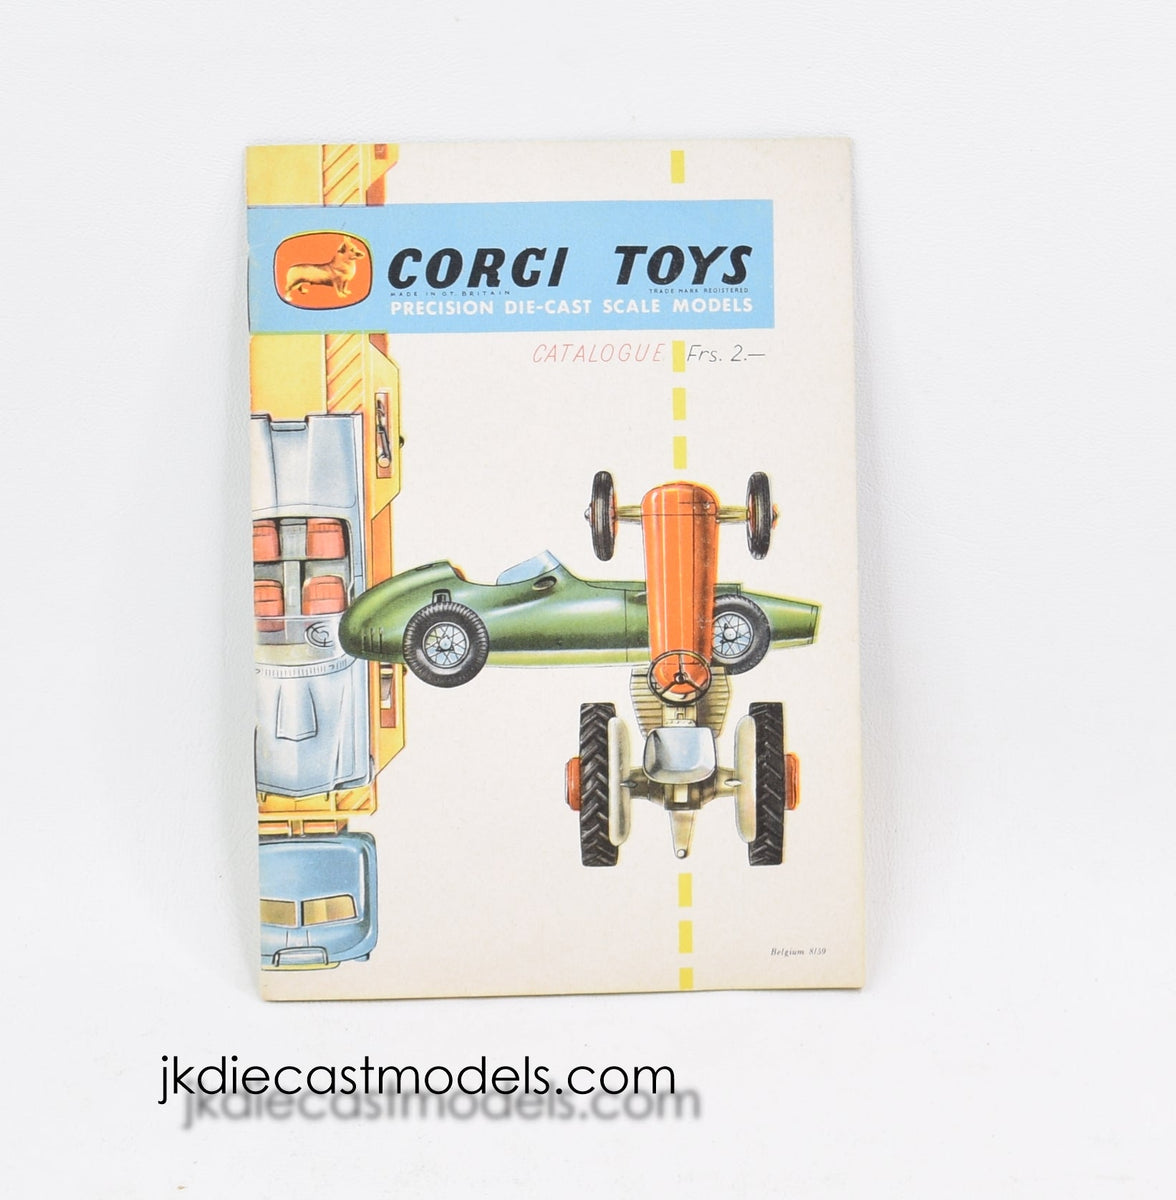 Belgium issue of Corgi toys 8/1959 Catalogue 'Dryden Collection'